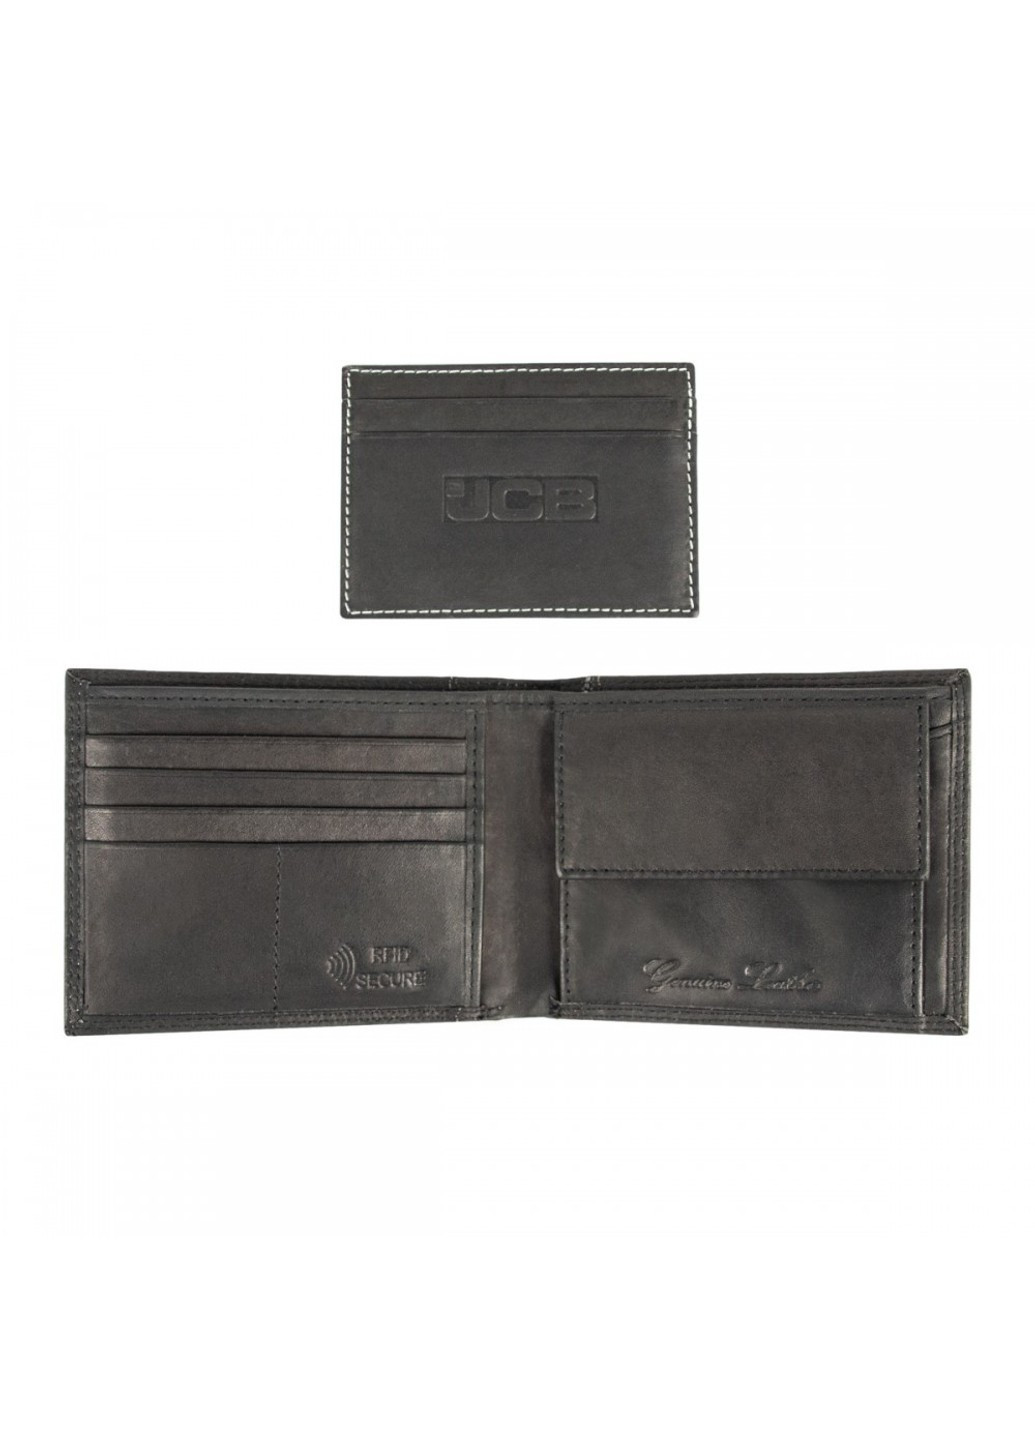 Английский мужской кожаный кошелек NC52MN Black (Черный) JCB (275867101)